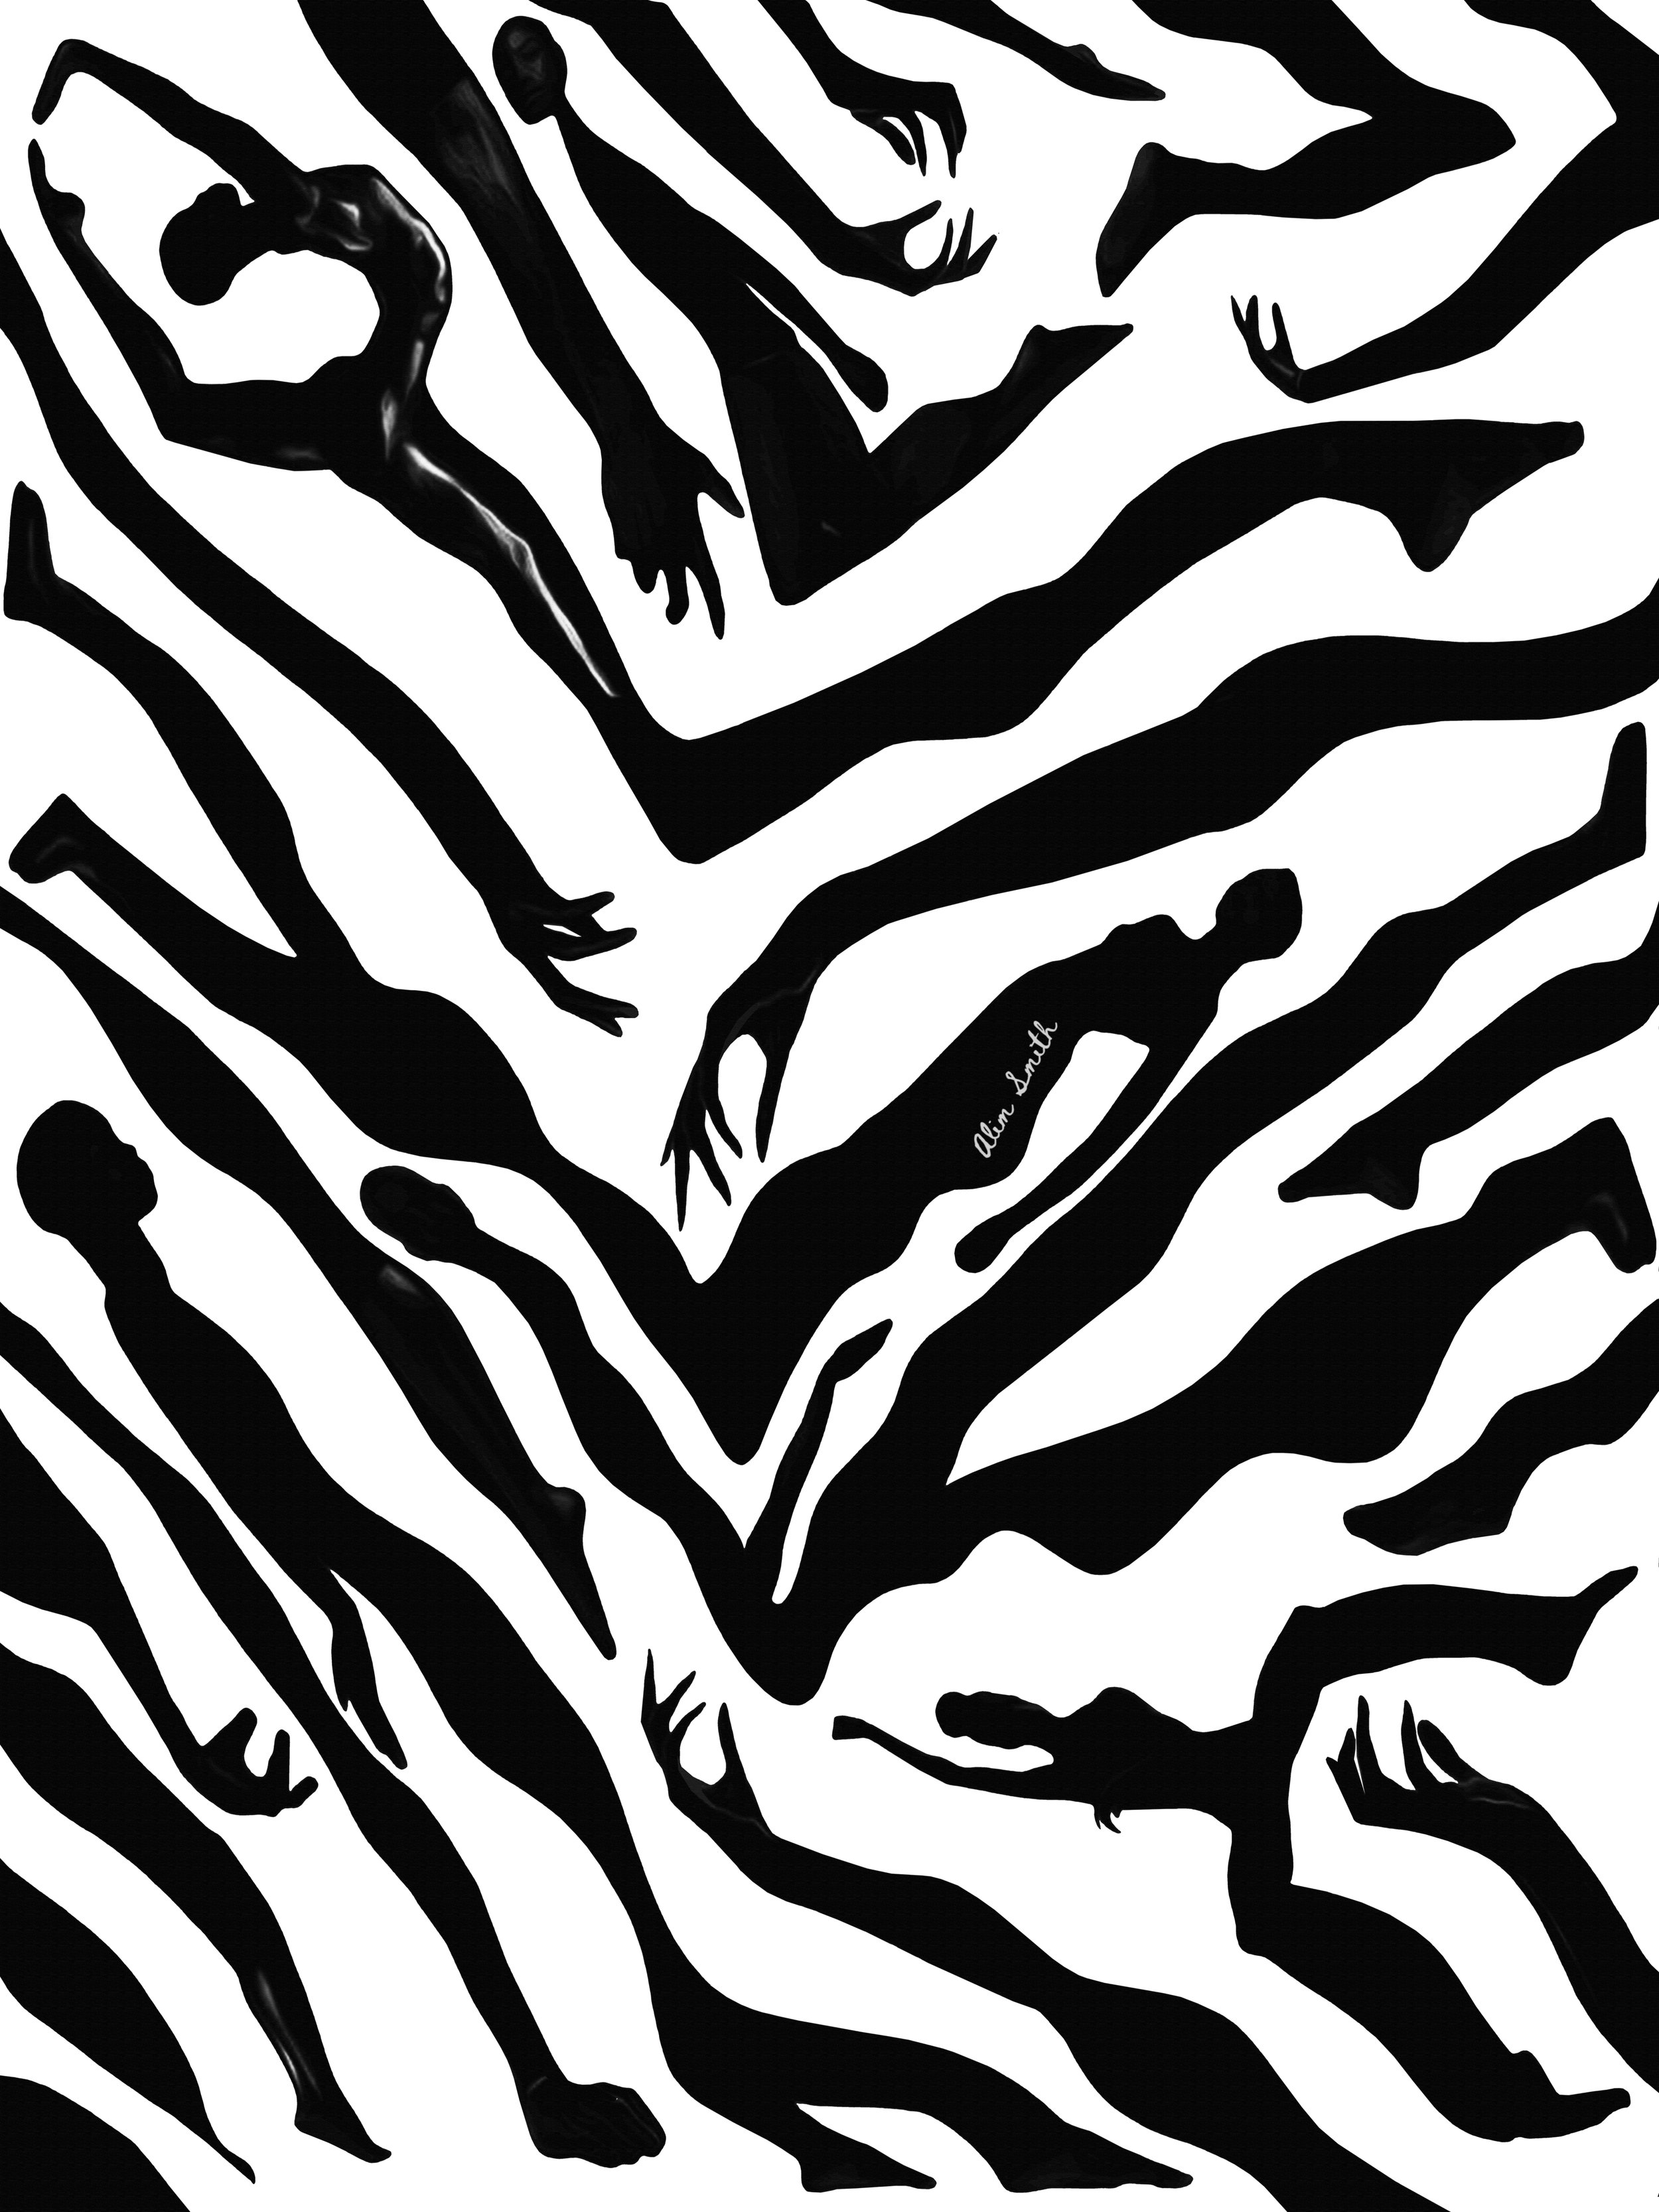 Zebruh(18x24).jpg